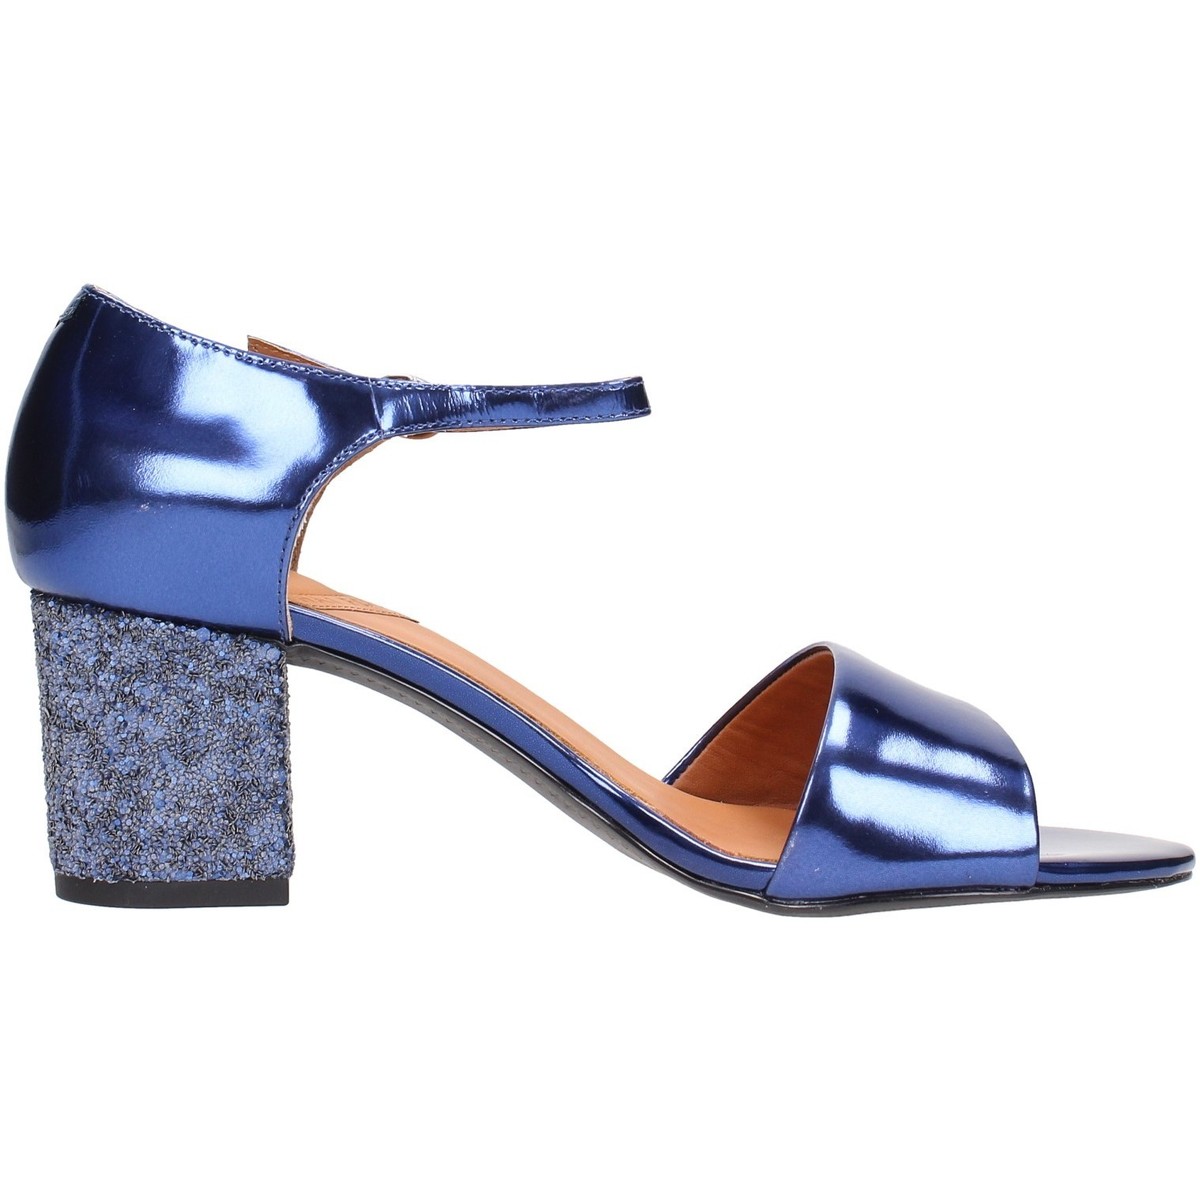 Chaussures Femme Lustres / suspensions et plafonniers  Bleu